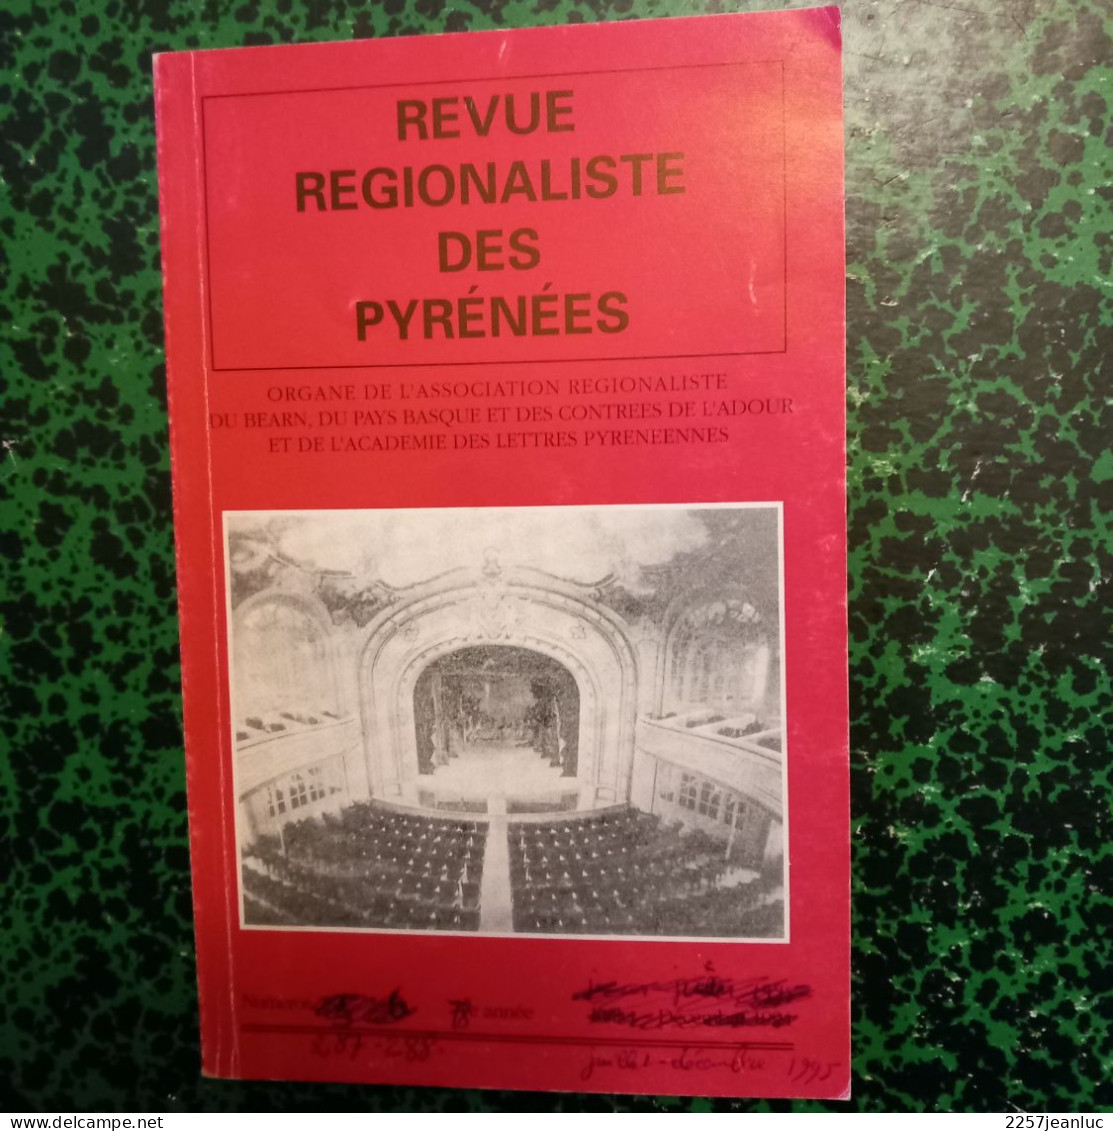 Revue Régionaliste Des Pyrénées Du Béarn  N: 283 / 284  De Décembre1994  * Photo Théatre Du Palais D'hiver à Pau - Midi-Pyrénées